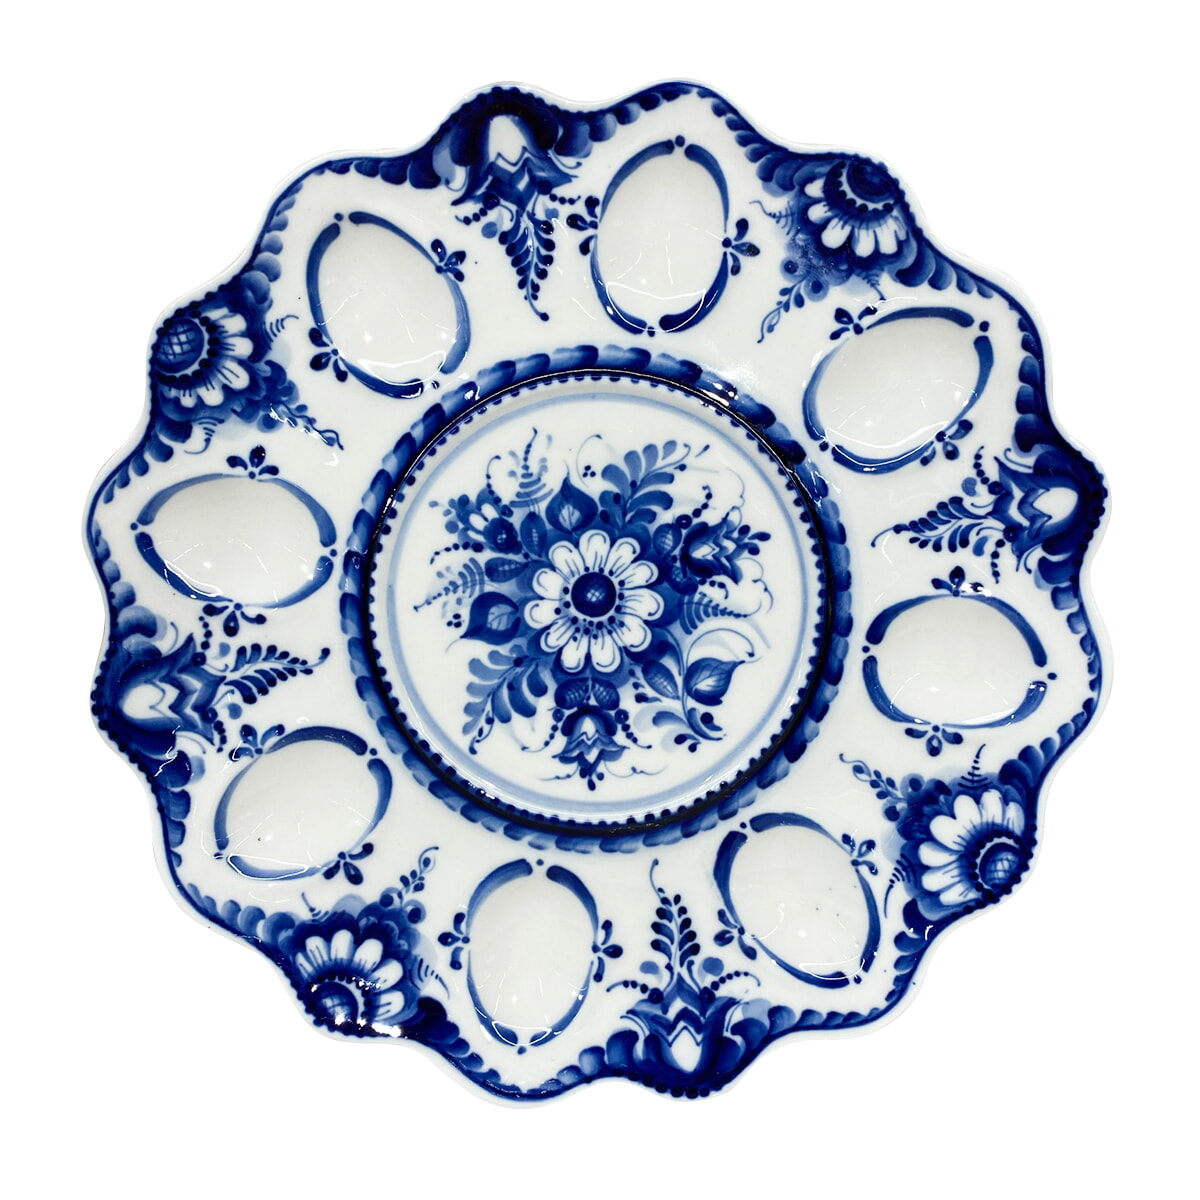 Тарелка для яиц росписи Шестаковой